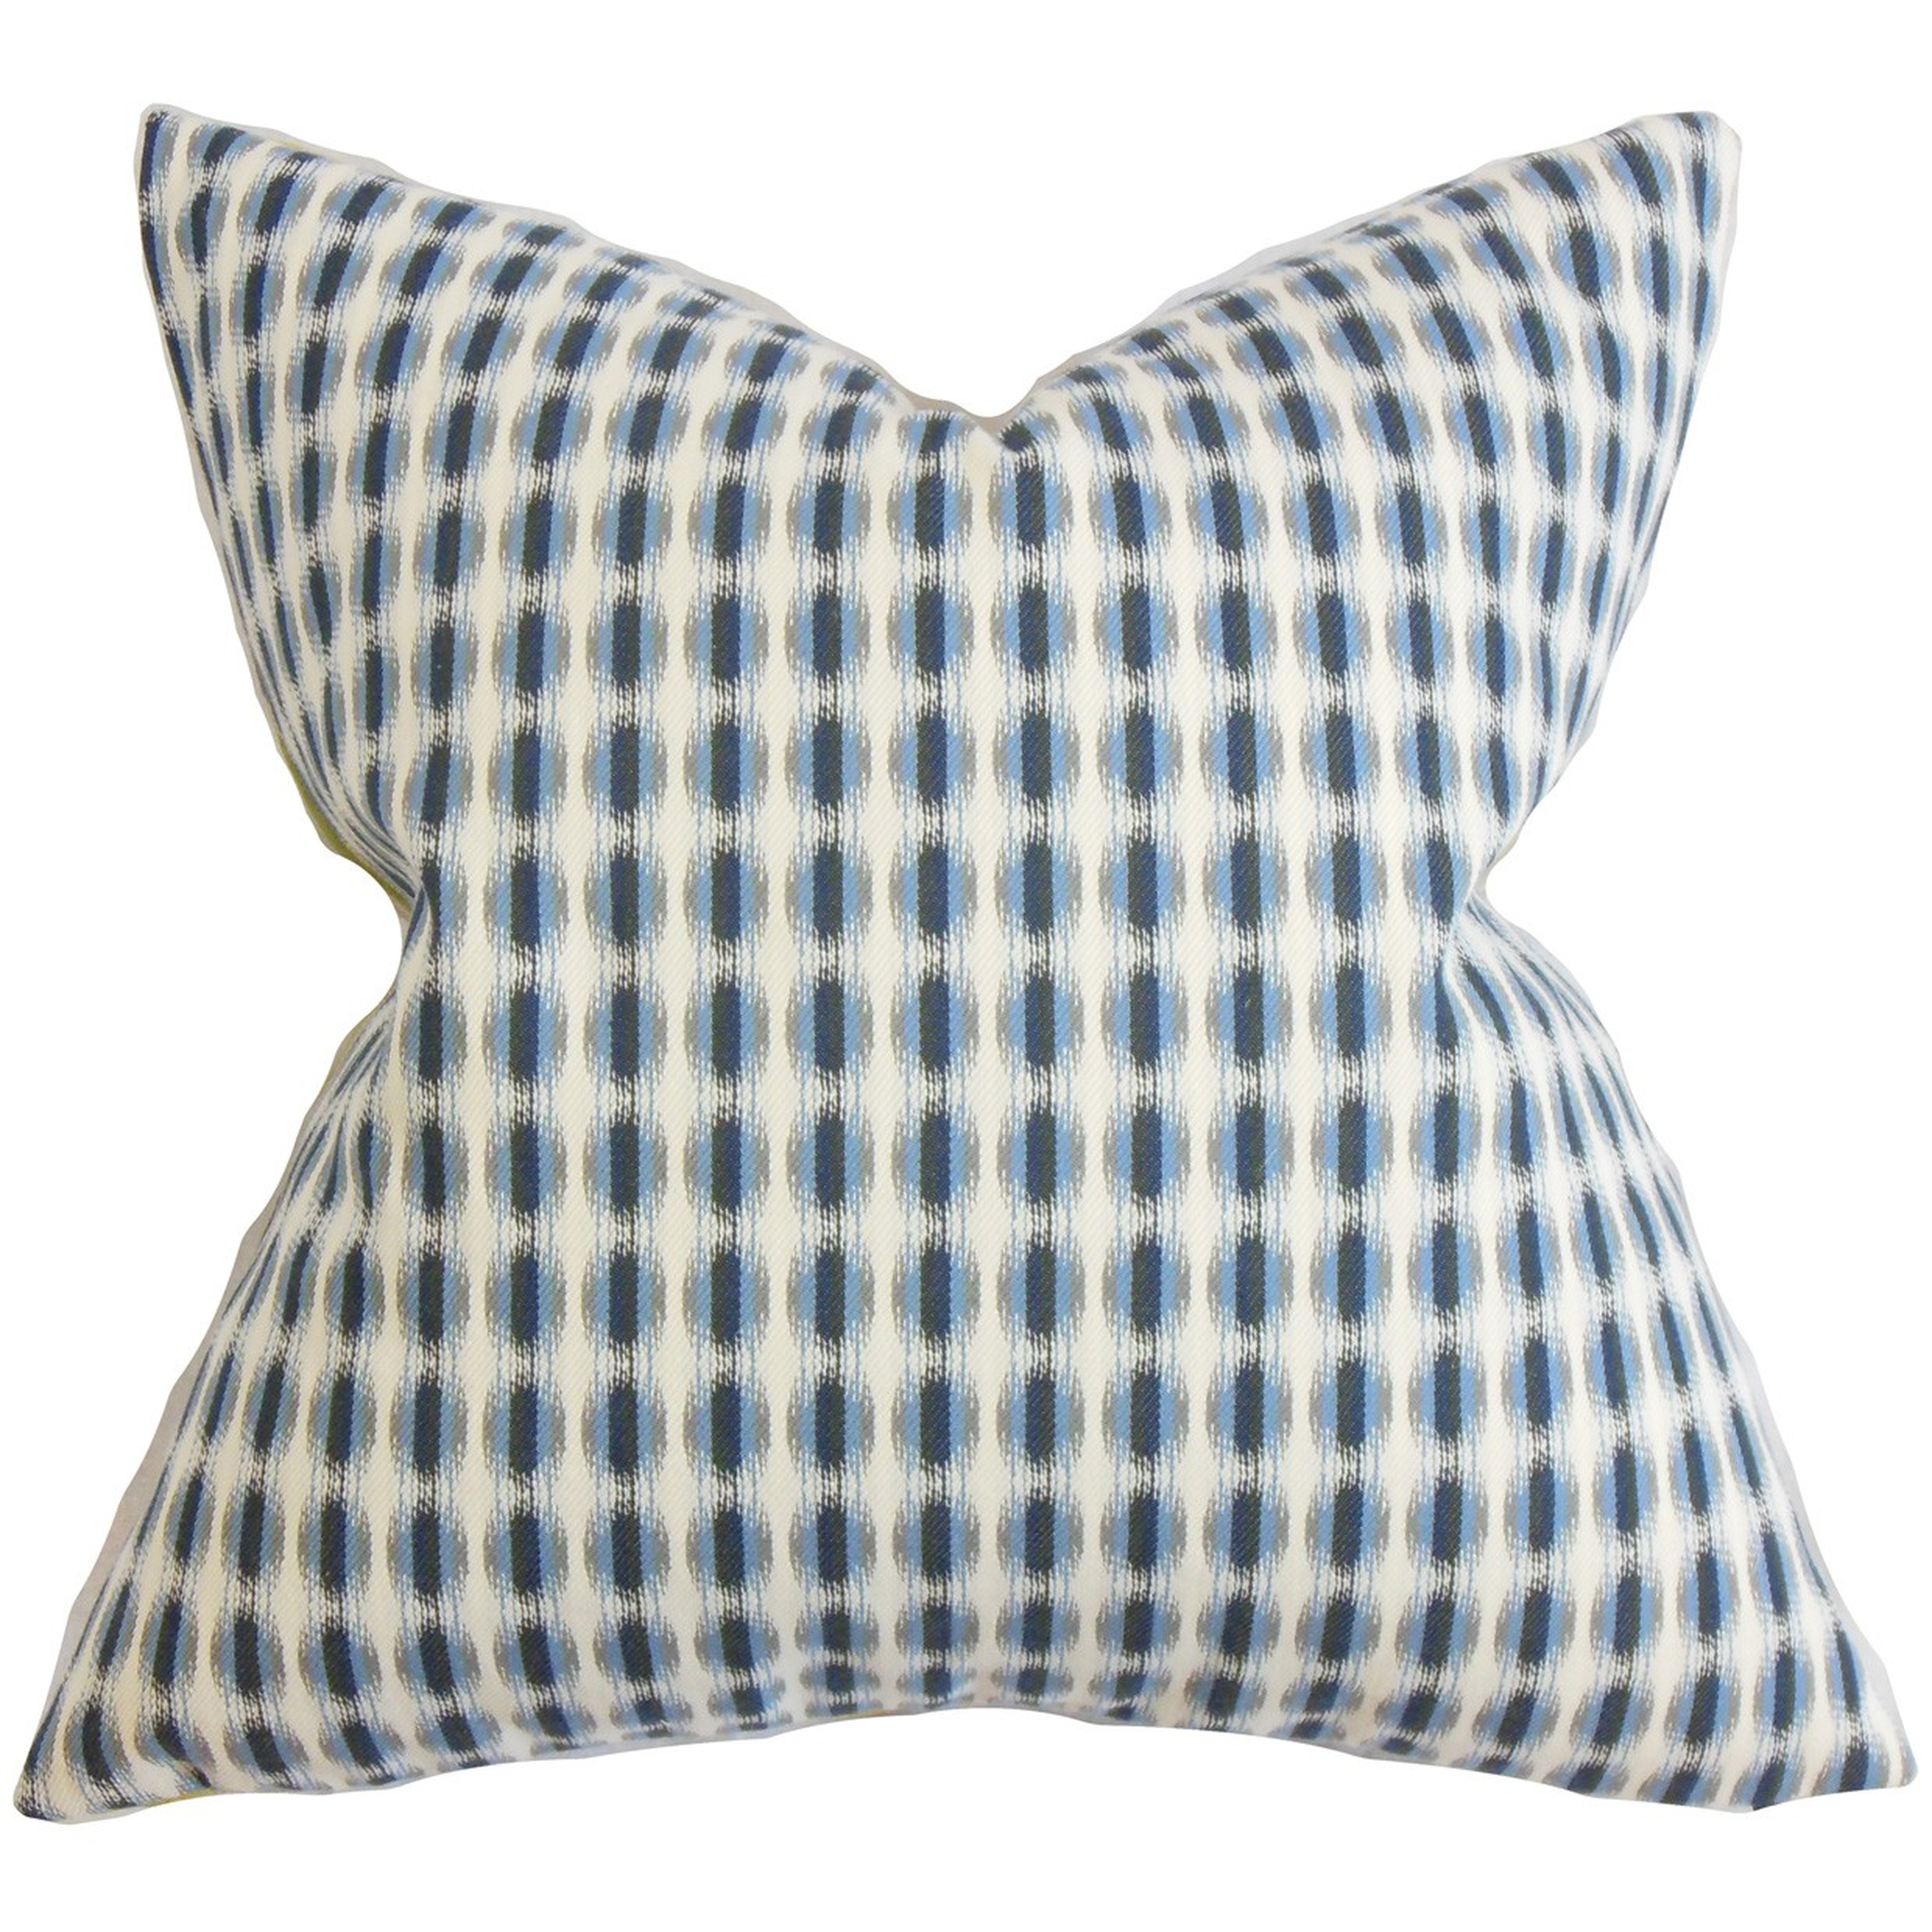 Italo Geometric Pillow Blue - 20" x 20" - Down pillow insert - Linen & Seam